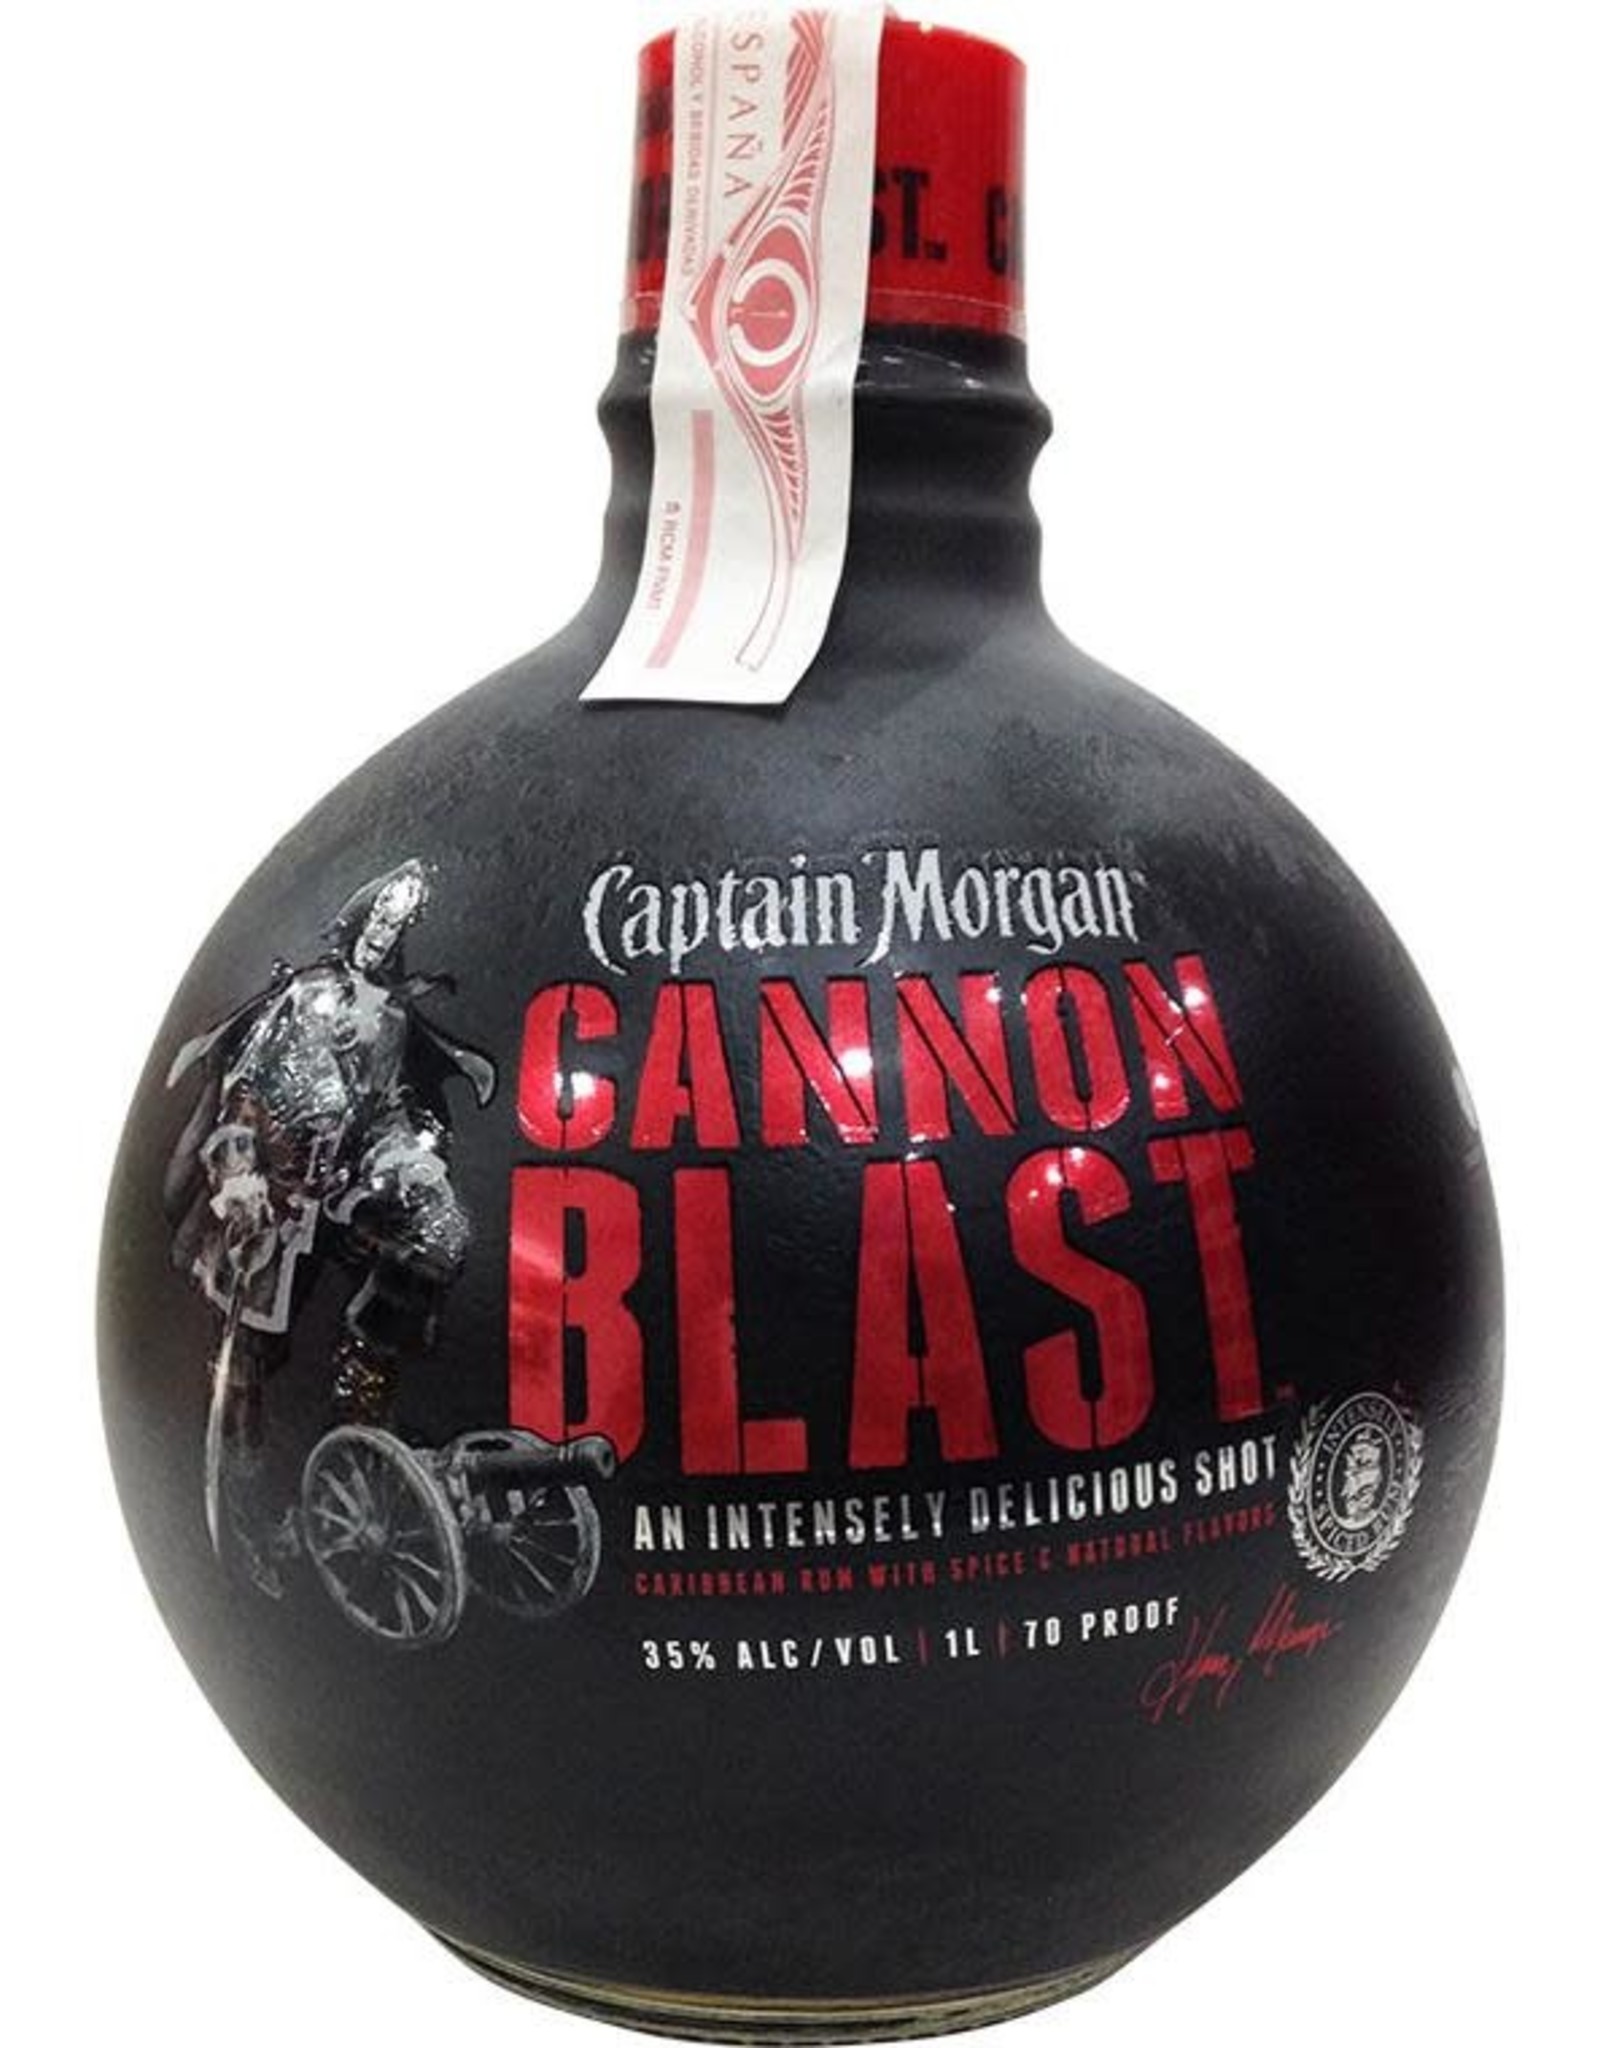 Captain Morgan Cannon Blast Rum